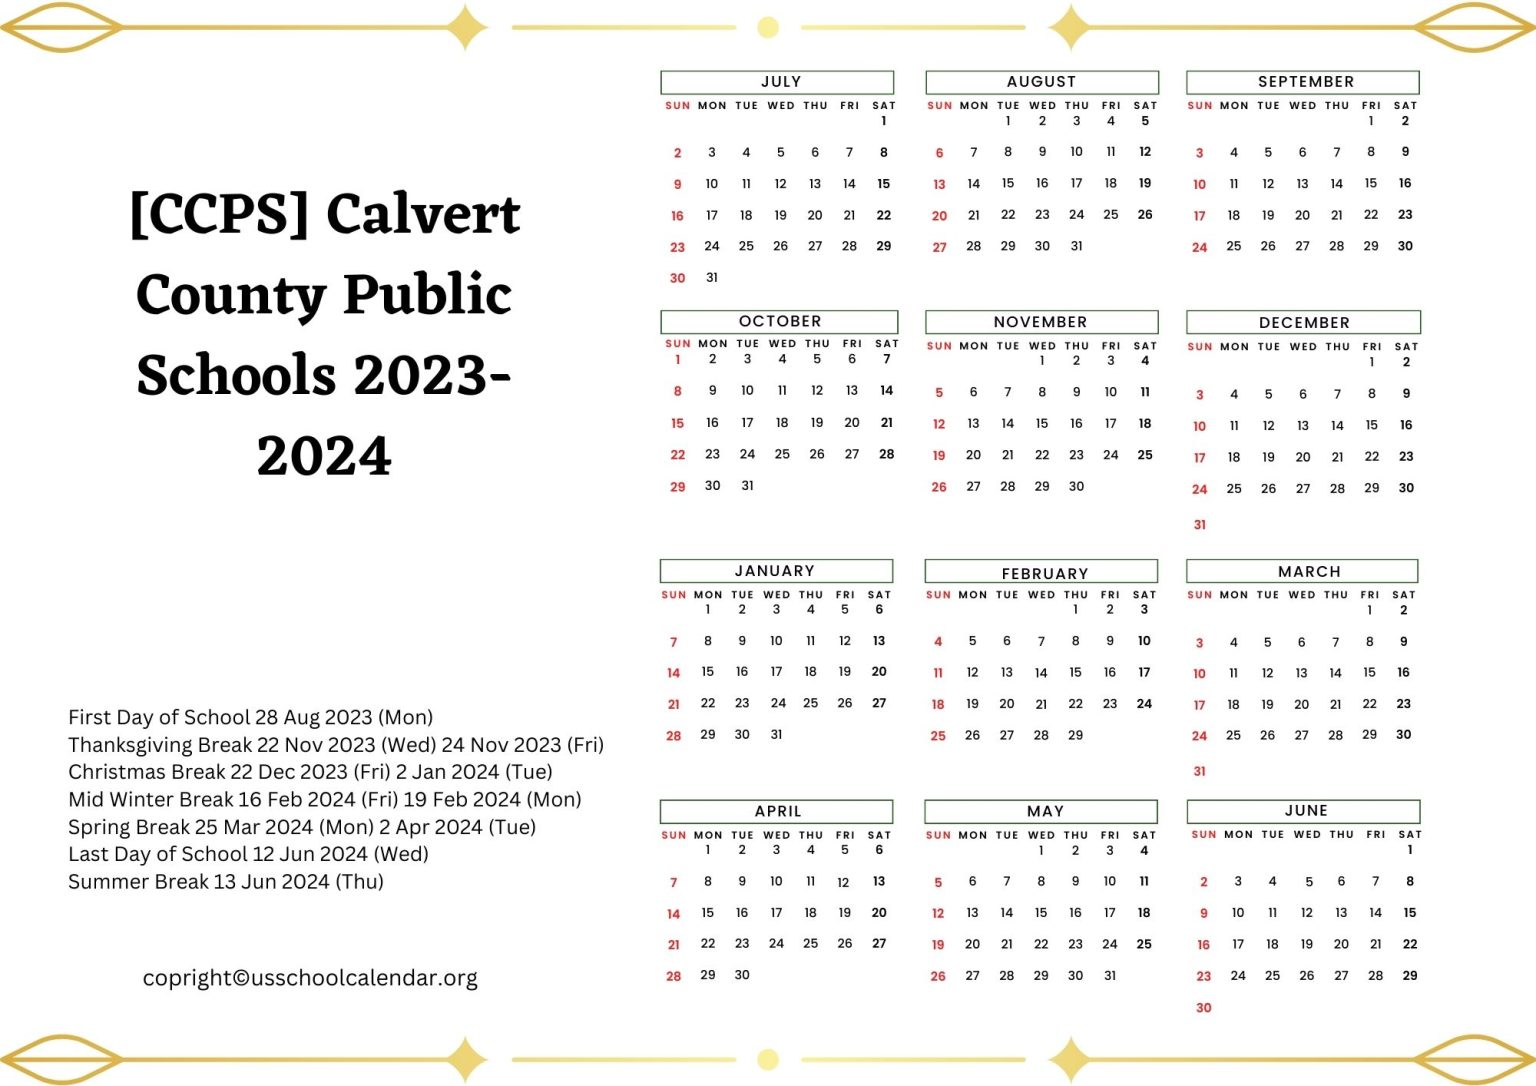 CCPS Calvert County Public Schools Calendar for 2023 2024